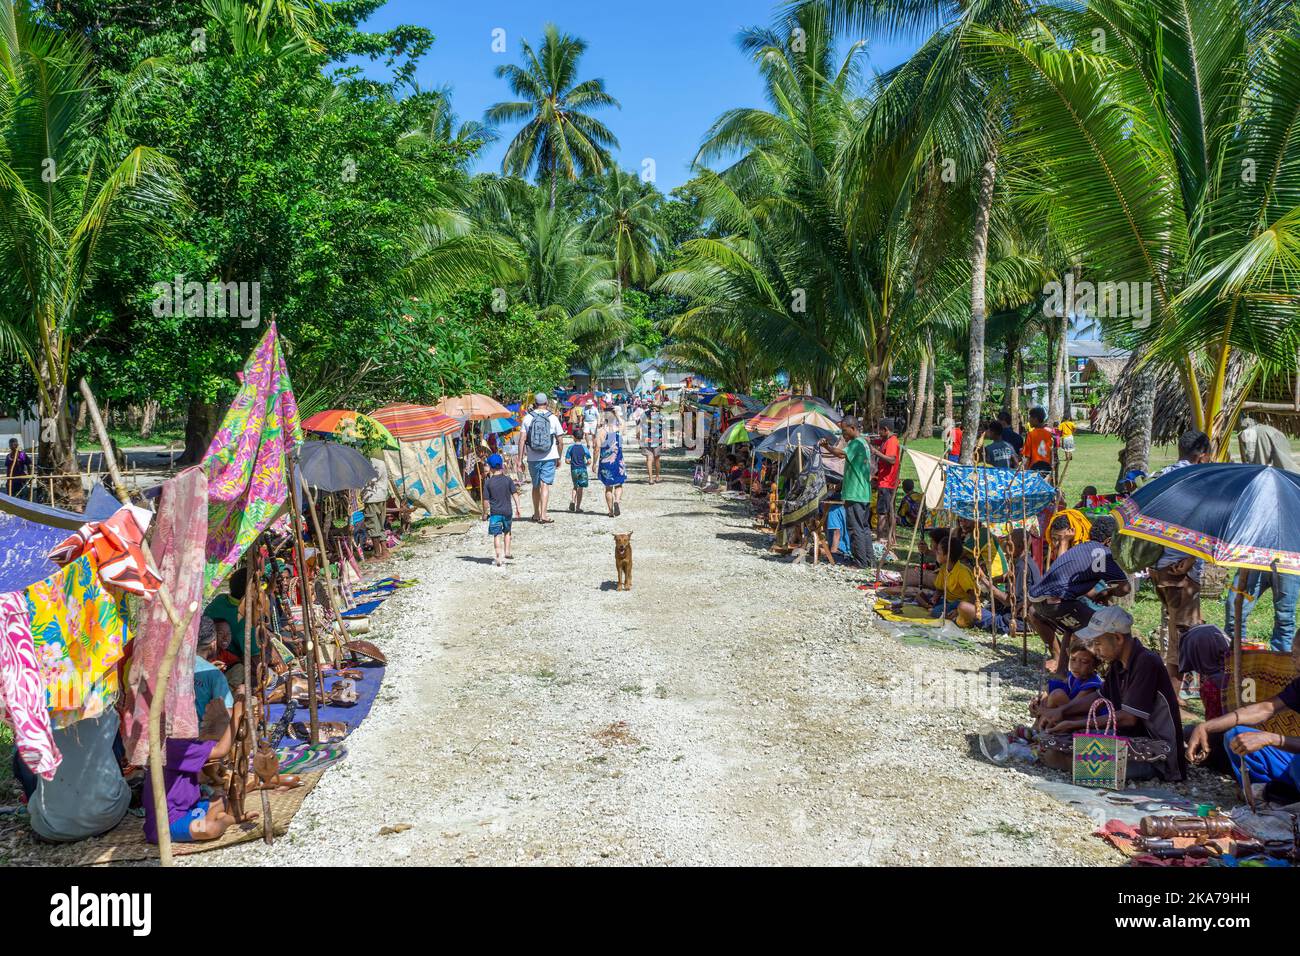 Gli abitanti del villaggio si allineano sulla strada vendendo artigianato e souvenir per visitare i passeggeri delle navi da crociera. Isola di Kiriwina Papua Nuova Guinea. Foto Stock